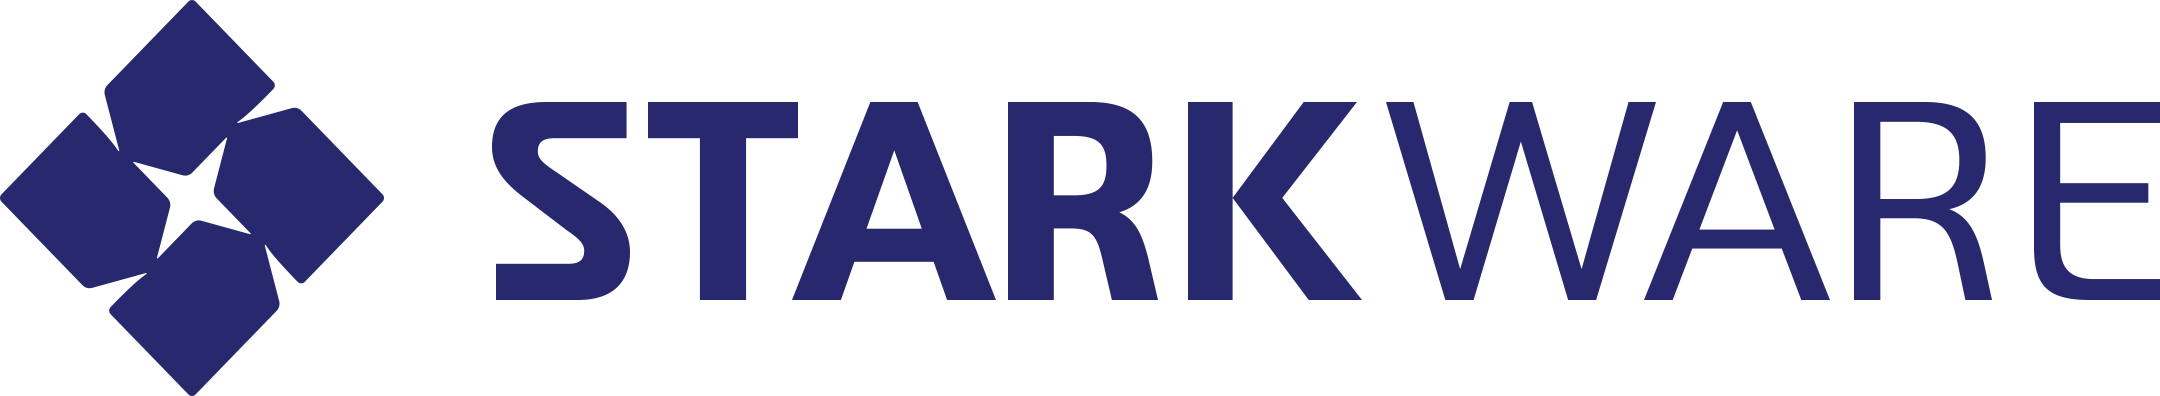 starkware logo